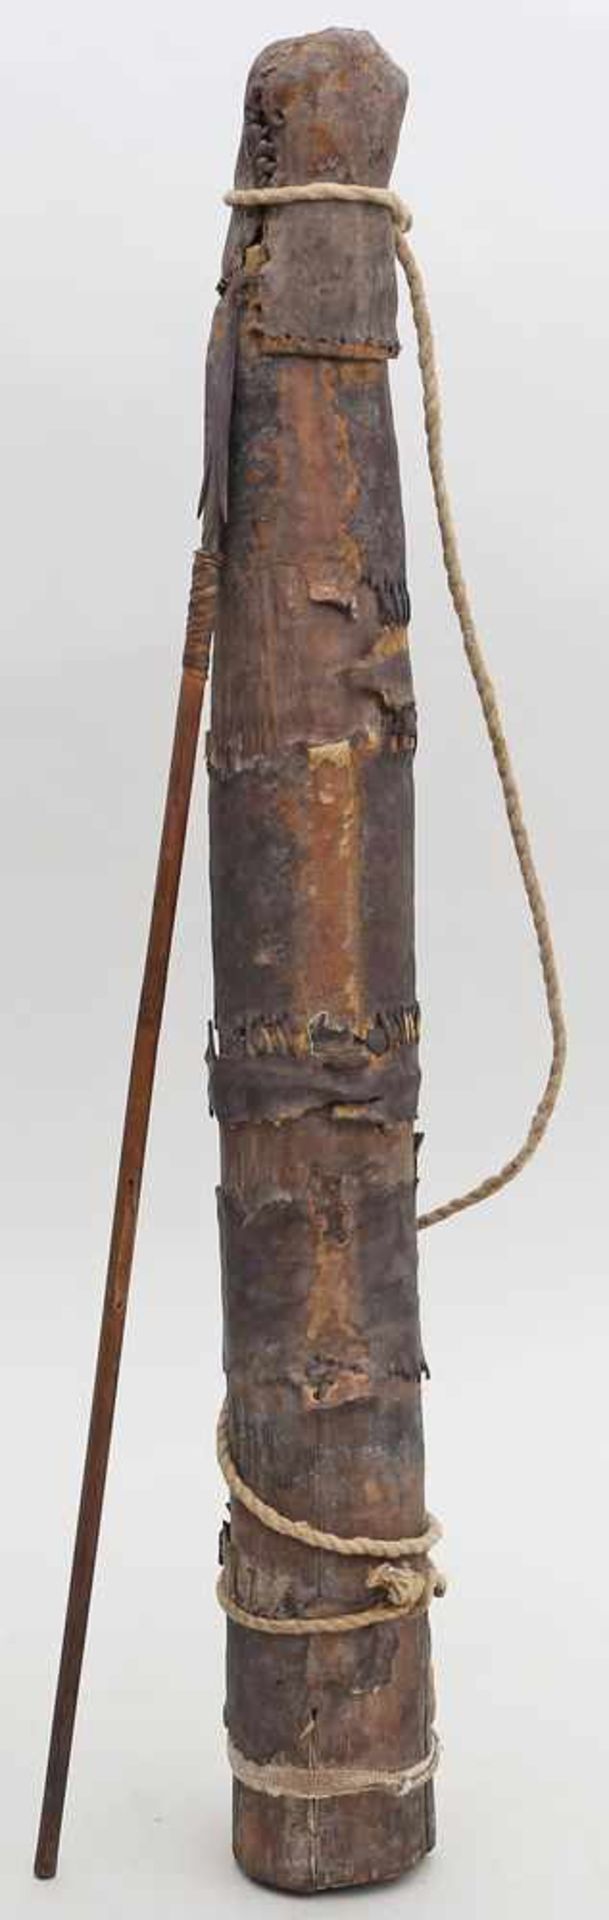 Holzköcher mit 5 Pfeilen.Pfeile mit Eisenspitzen. Wohl Afrika. L. 47 cm.